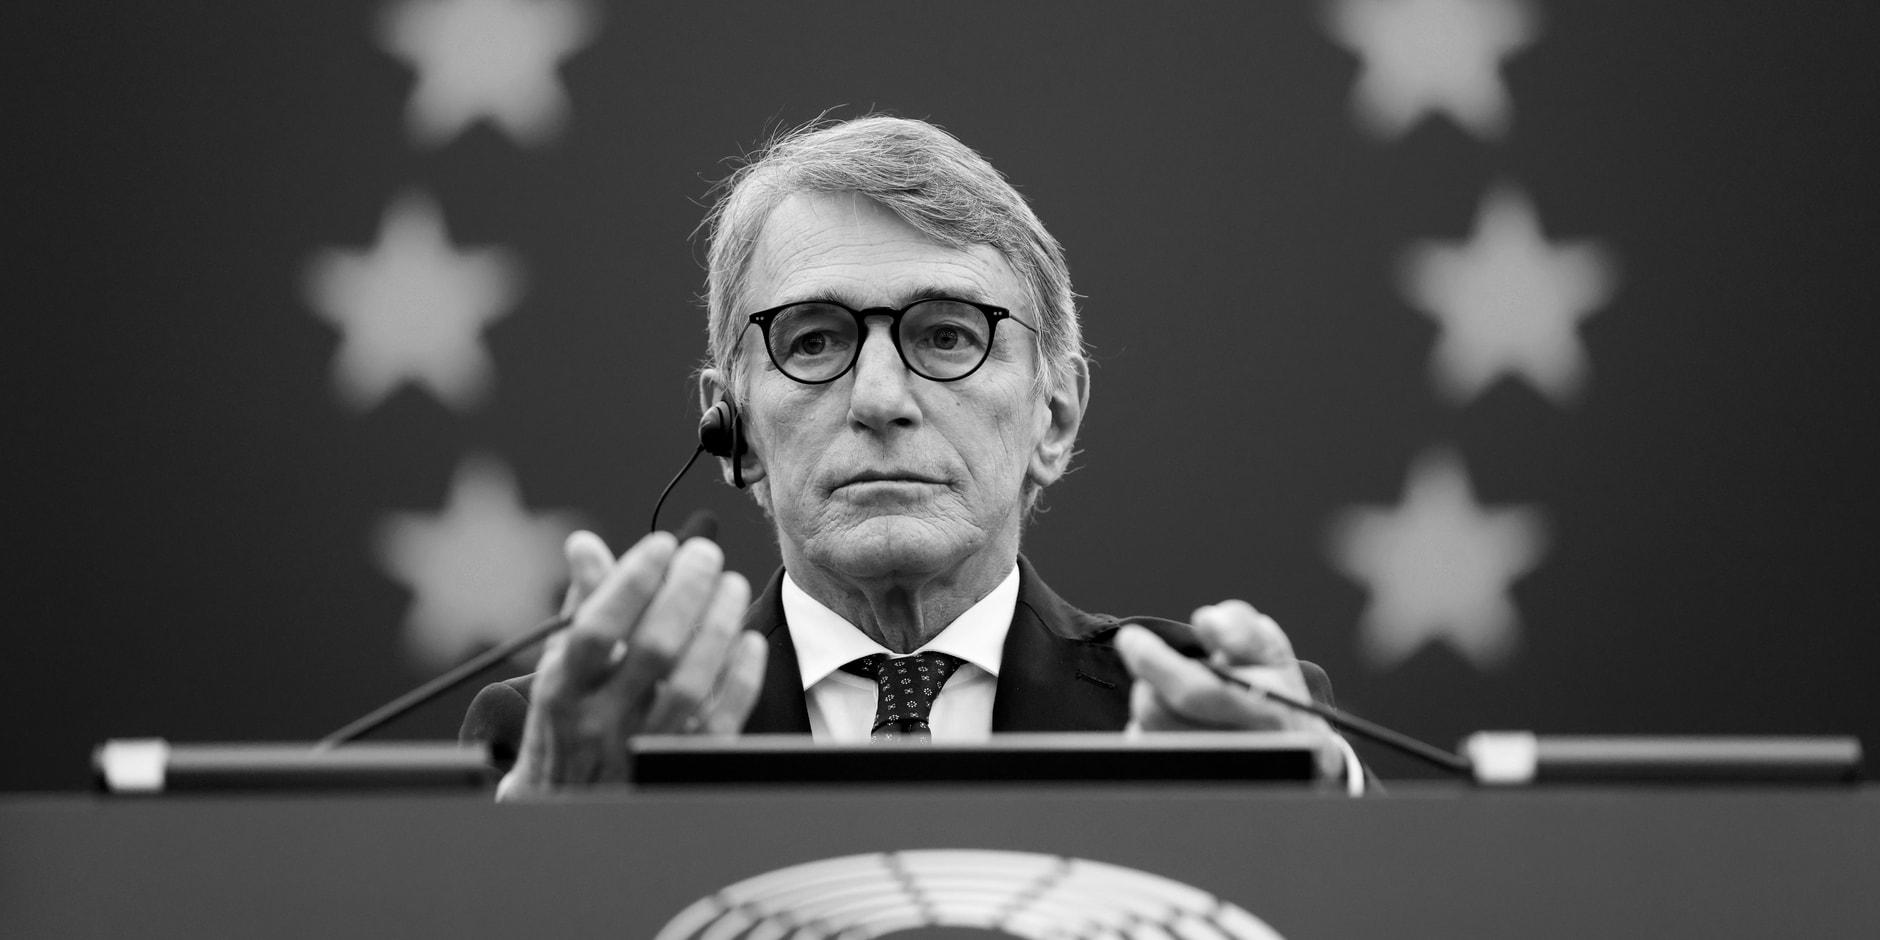 EU-Parlamentspräsident David Sassoli